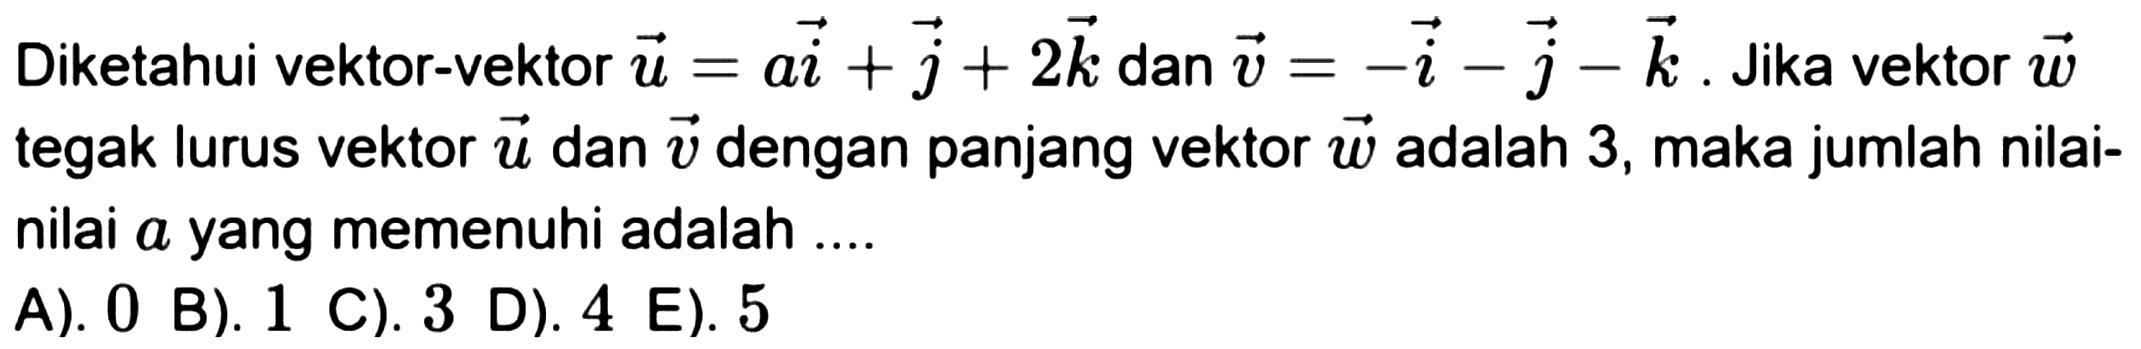 Diketahui vektor-vektor  u=a i+j+2 k  dan  v=-i-j-k . Jika vektor  w  tegak lurus vektor  u  dan  v  dengan panjang vektor  w  adalah 3 , maka jumlah nilainilai a yang memenuhi adalah ....
  { A). ) 0   { B). ) 1   { C). ) 3   { D). ) 4   { E). ) 5 